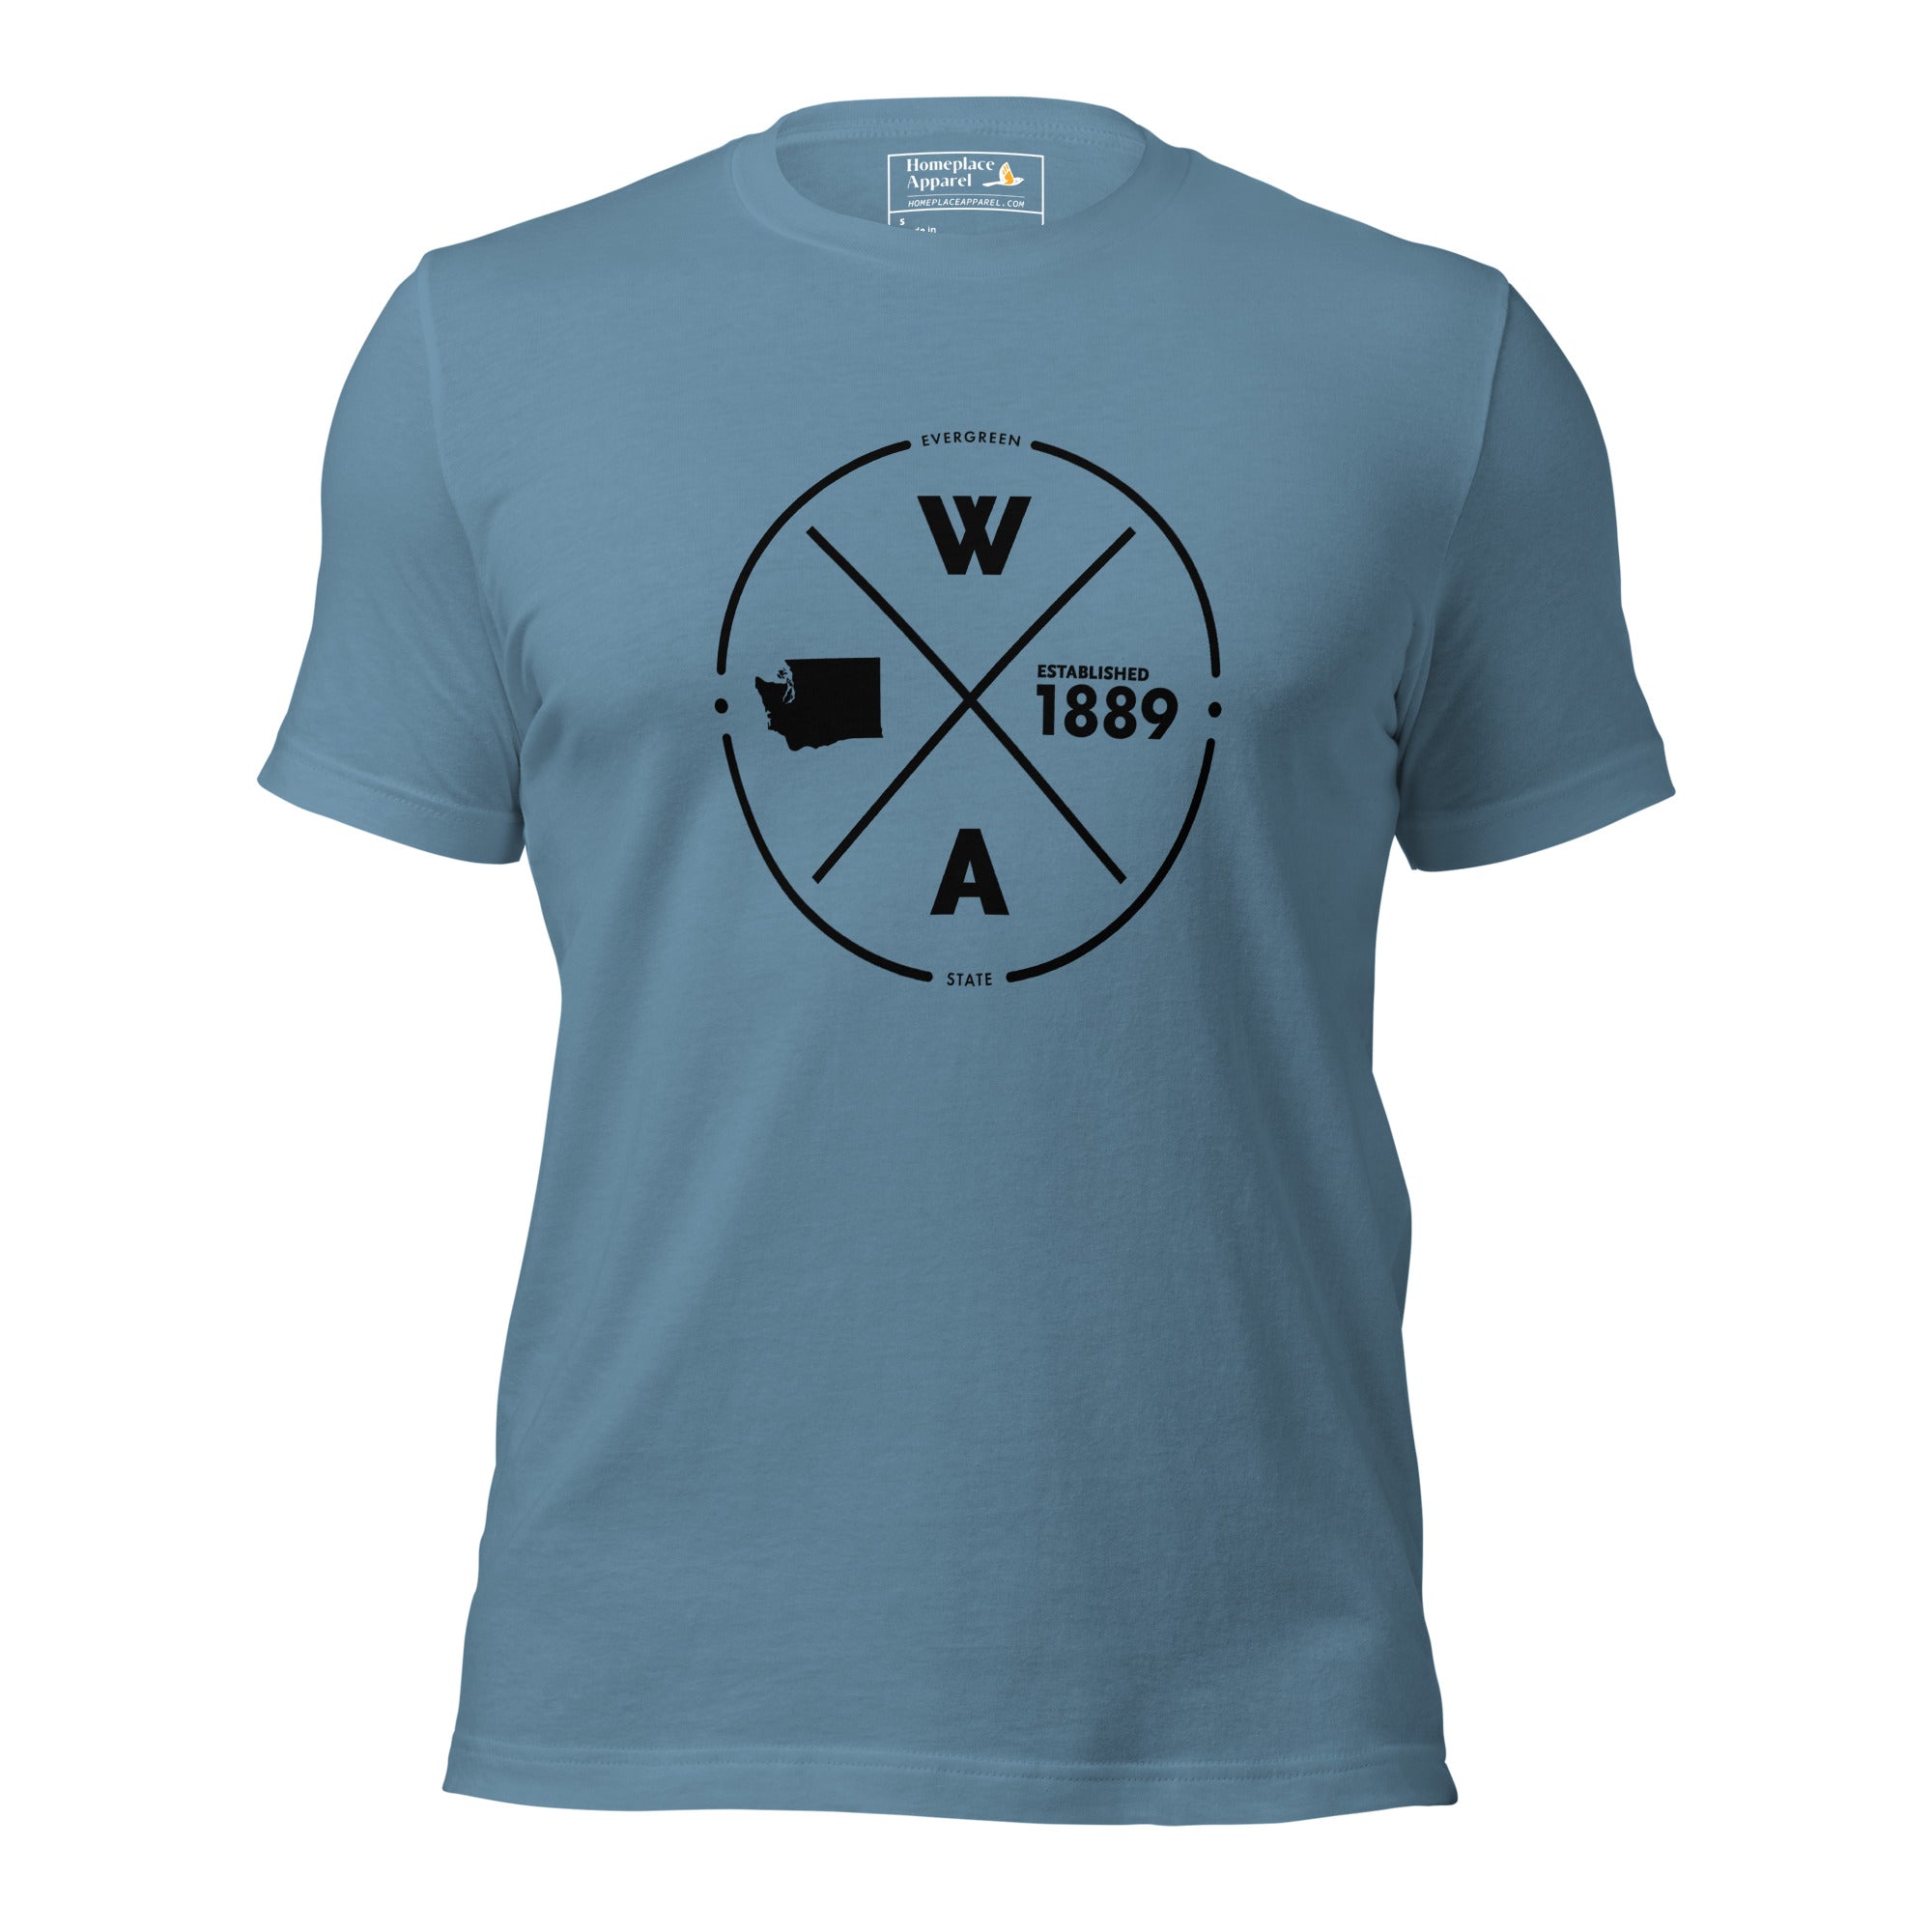 unisex-staple-t-shirt-steel-blue-front-650c6ec4e66e7.jpg